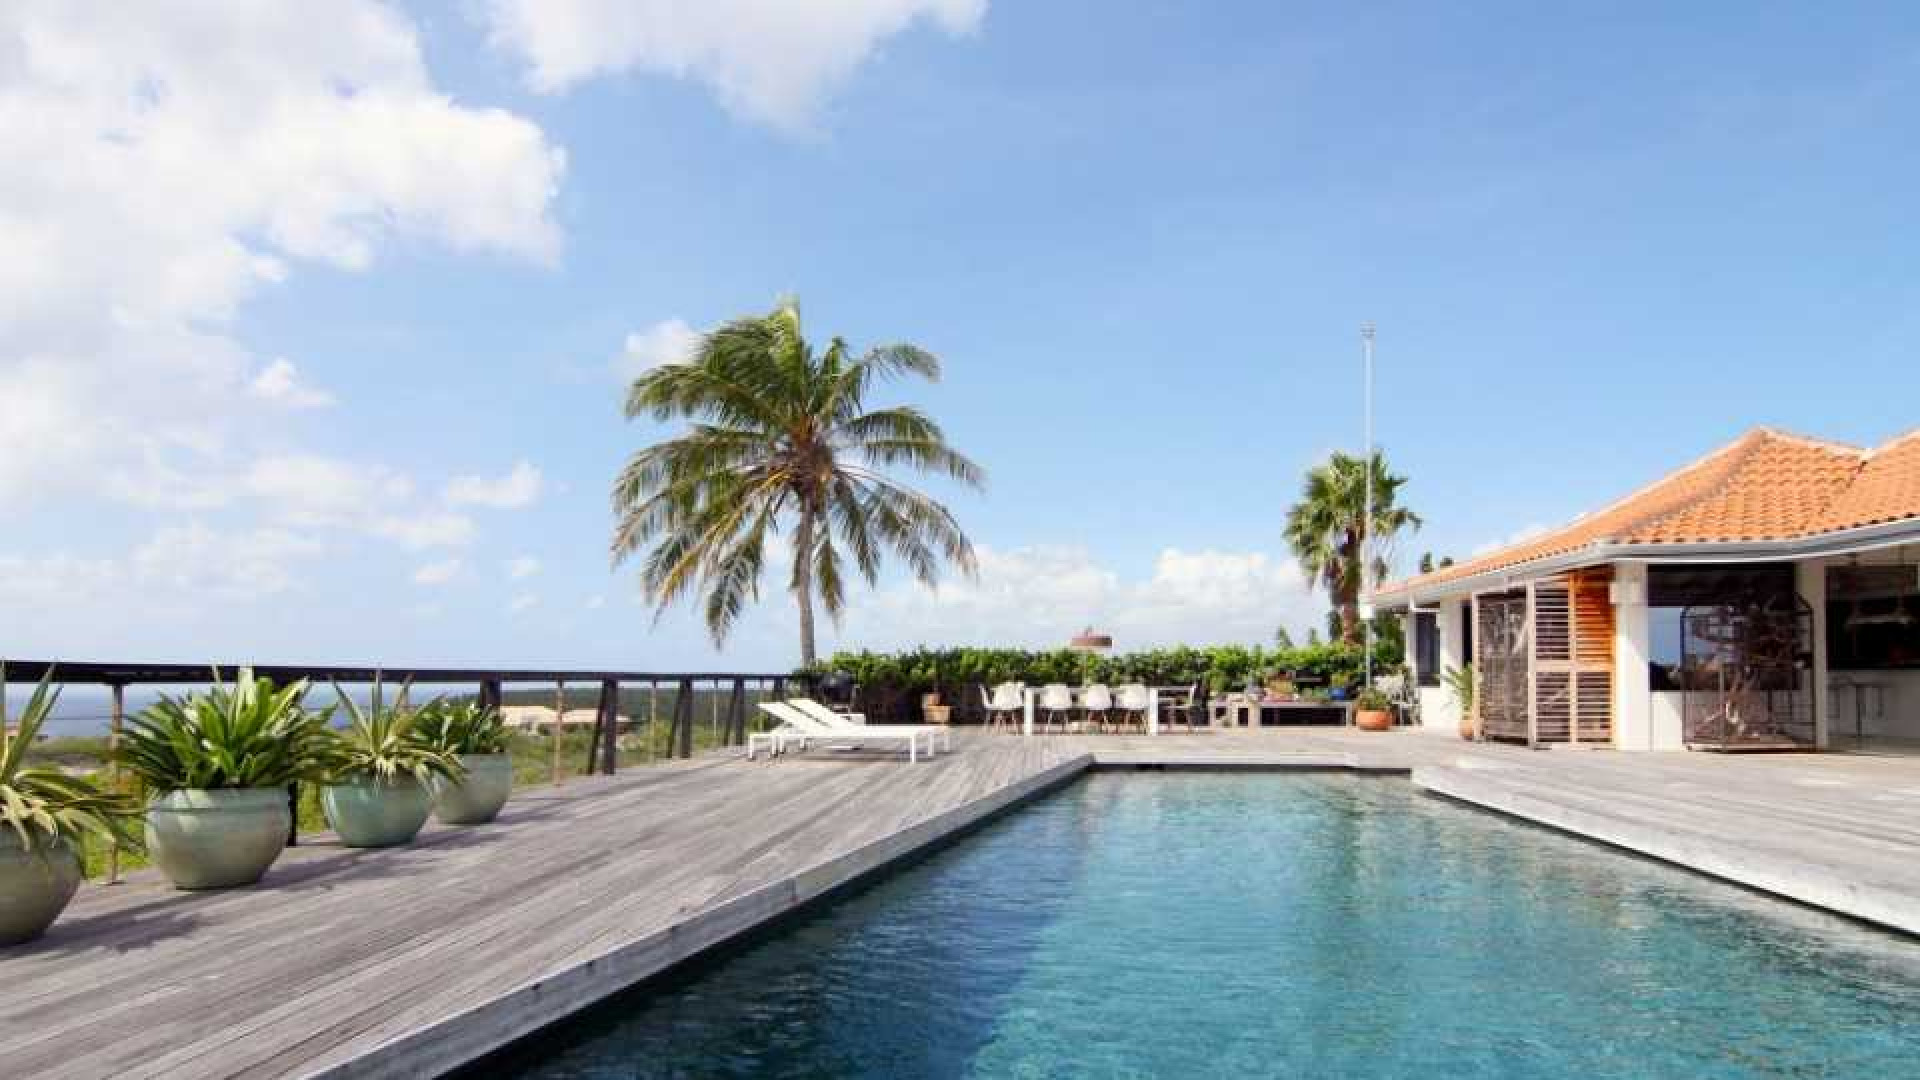 Barry Hay verlaagt vraagprijs van zijn miljoenen villa op Curacao. Zie foto's 6